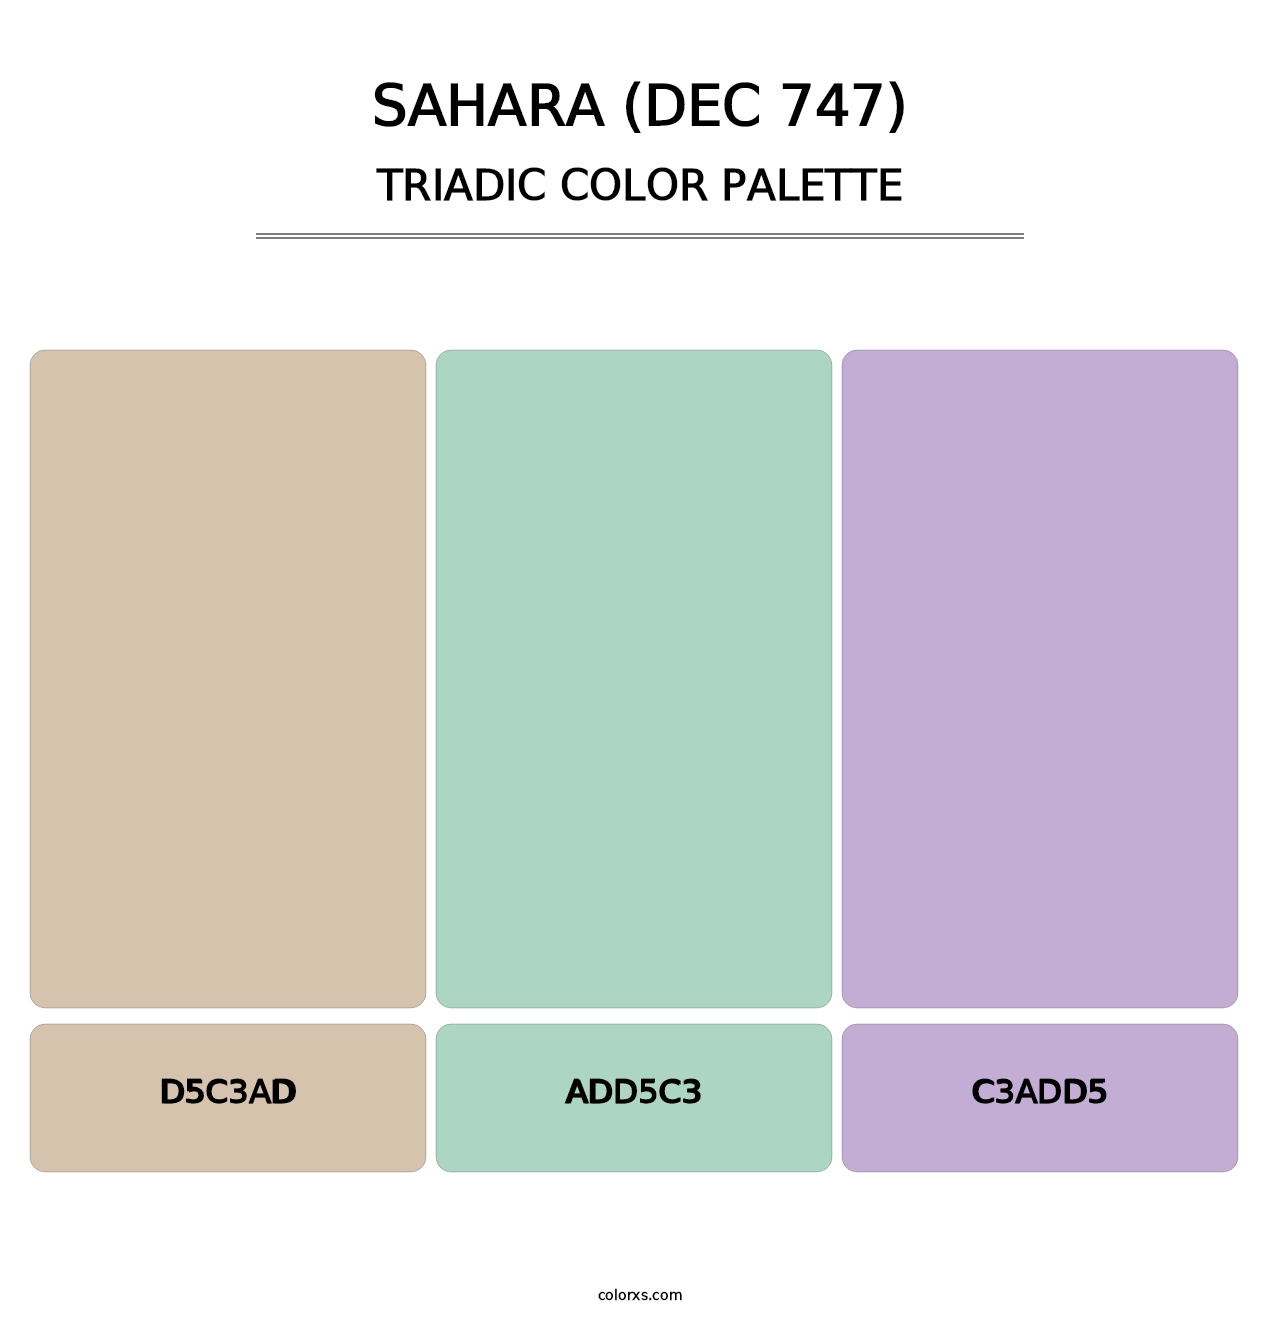 Sahara (DEC 747) - Triadic Color Palette